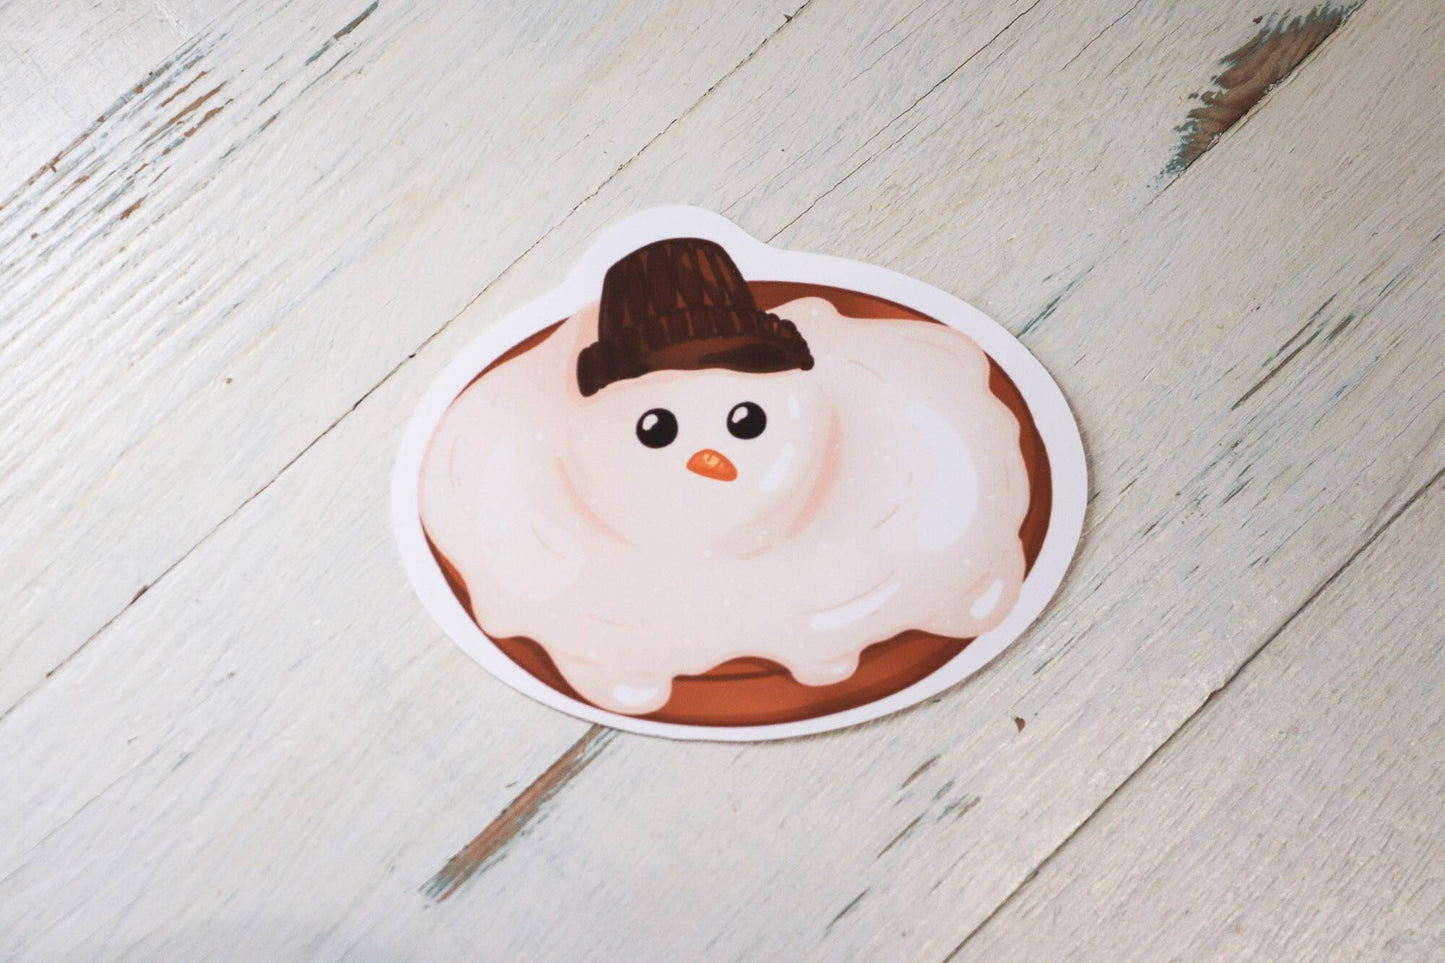 Sticker - Melted Snowman Cookie